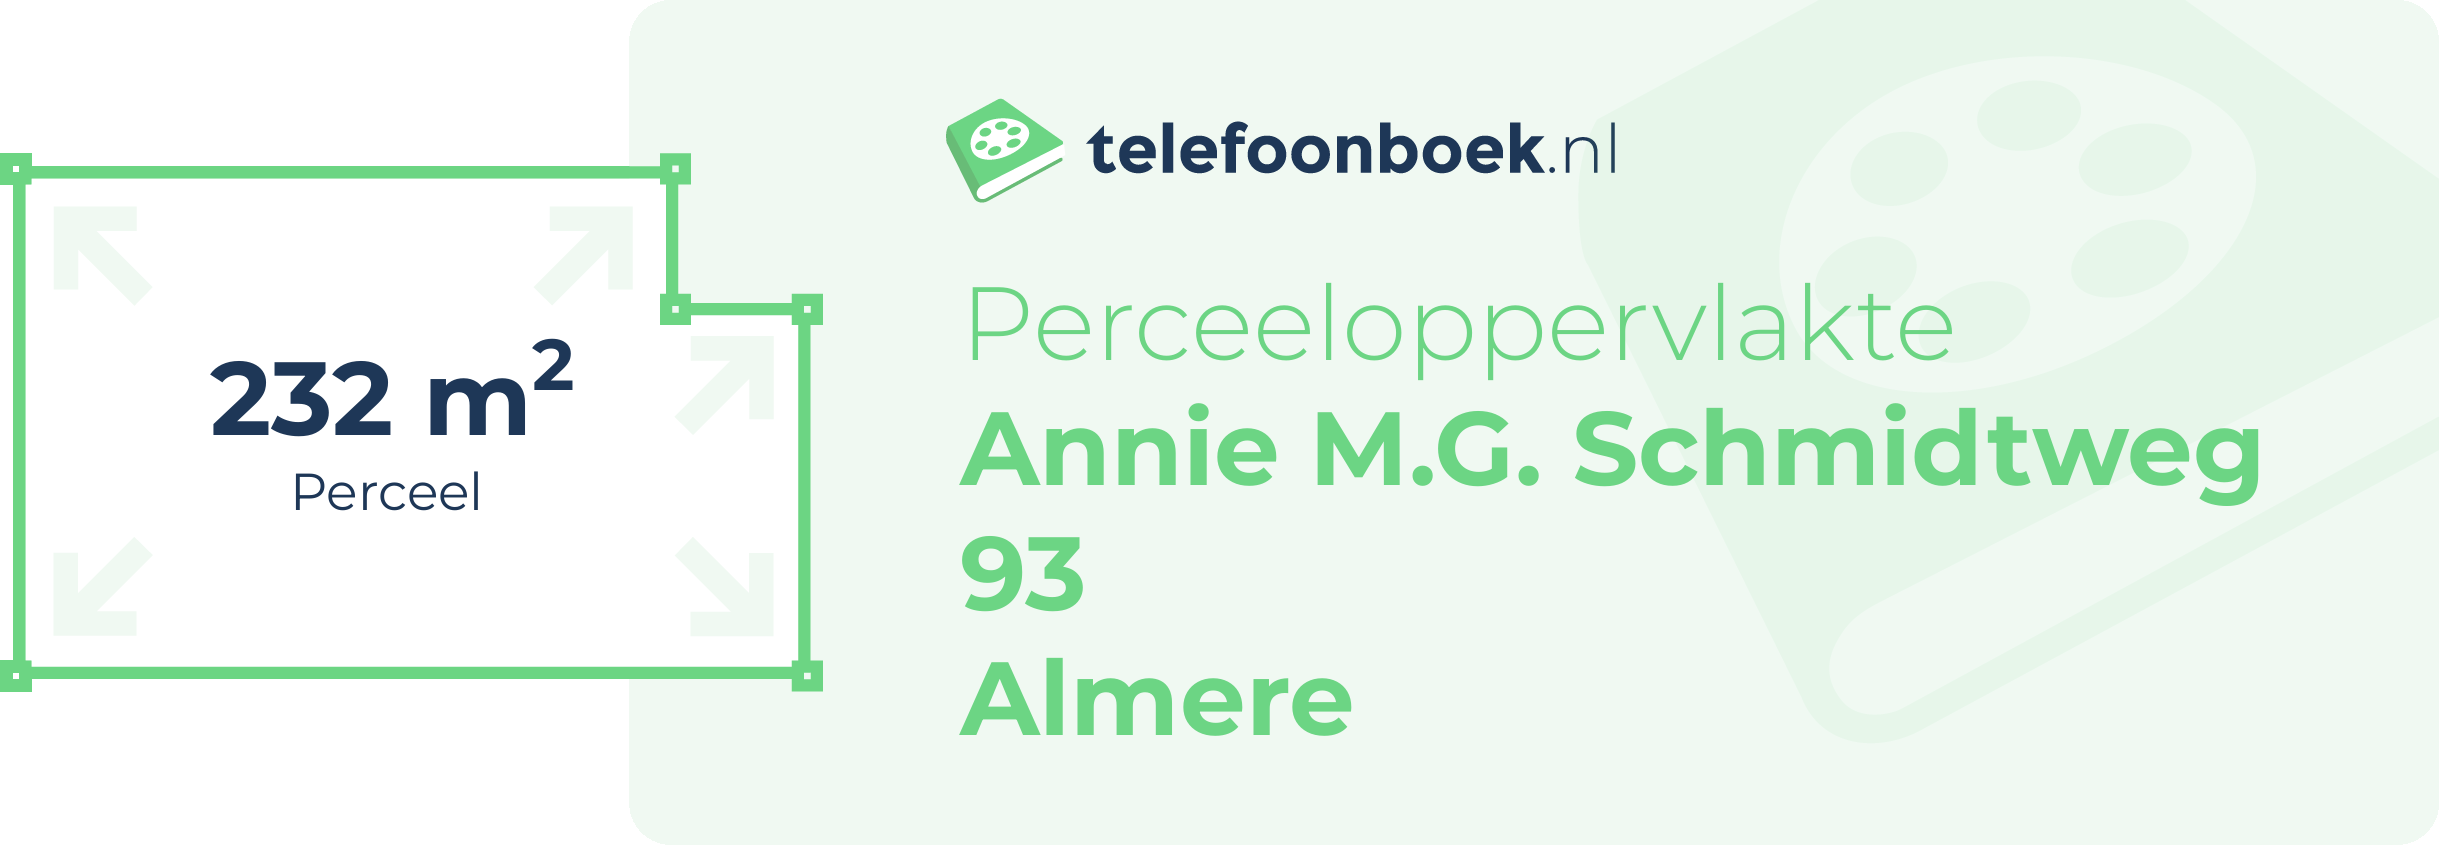 Perceeloppervlakte Annie M.G. Schmidtweg 93 Almere